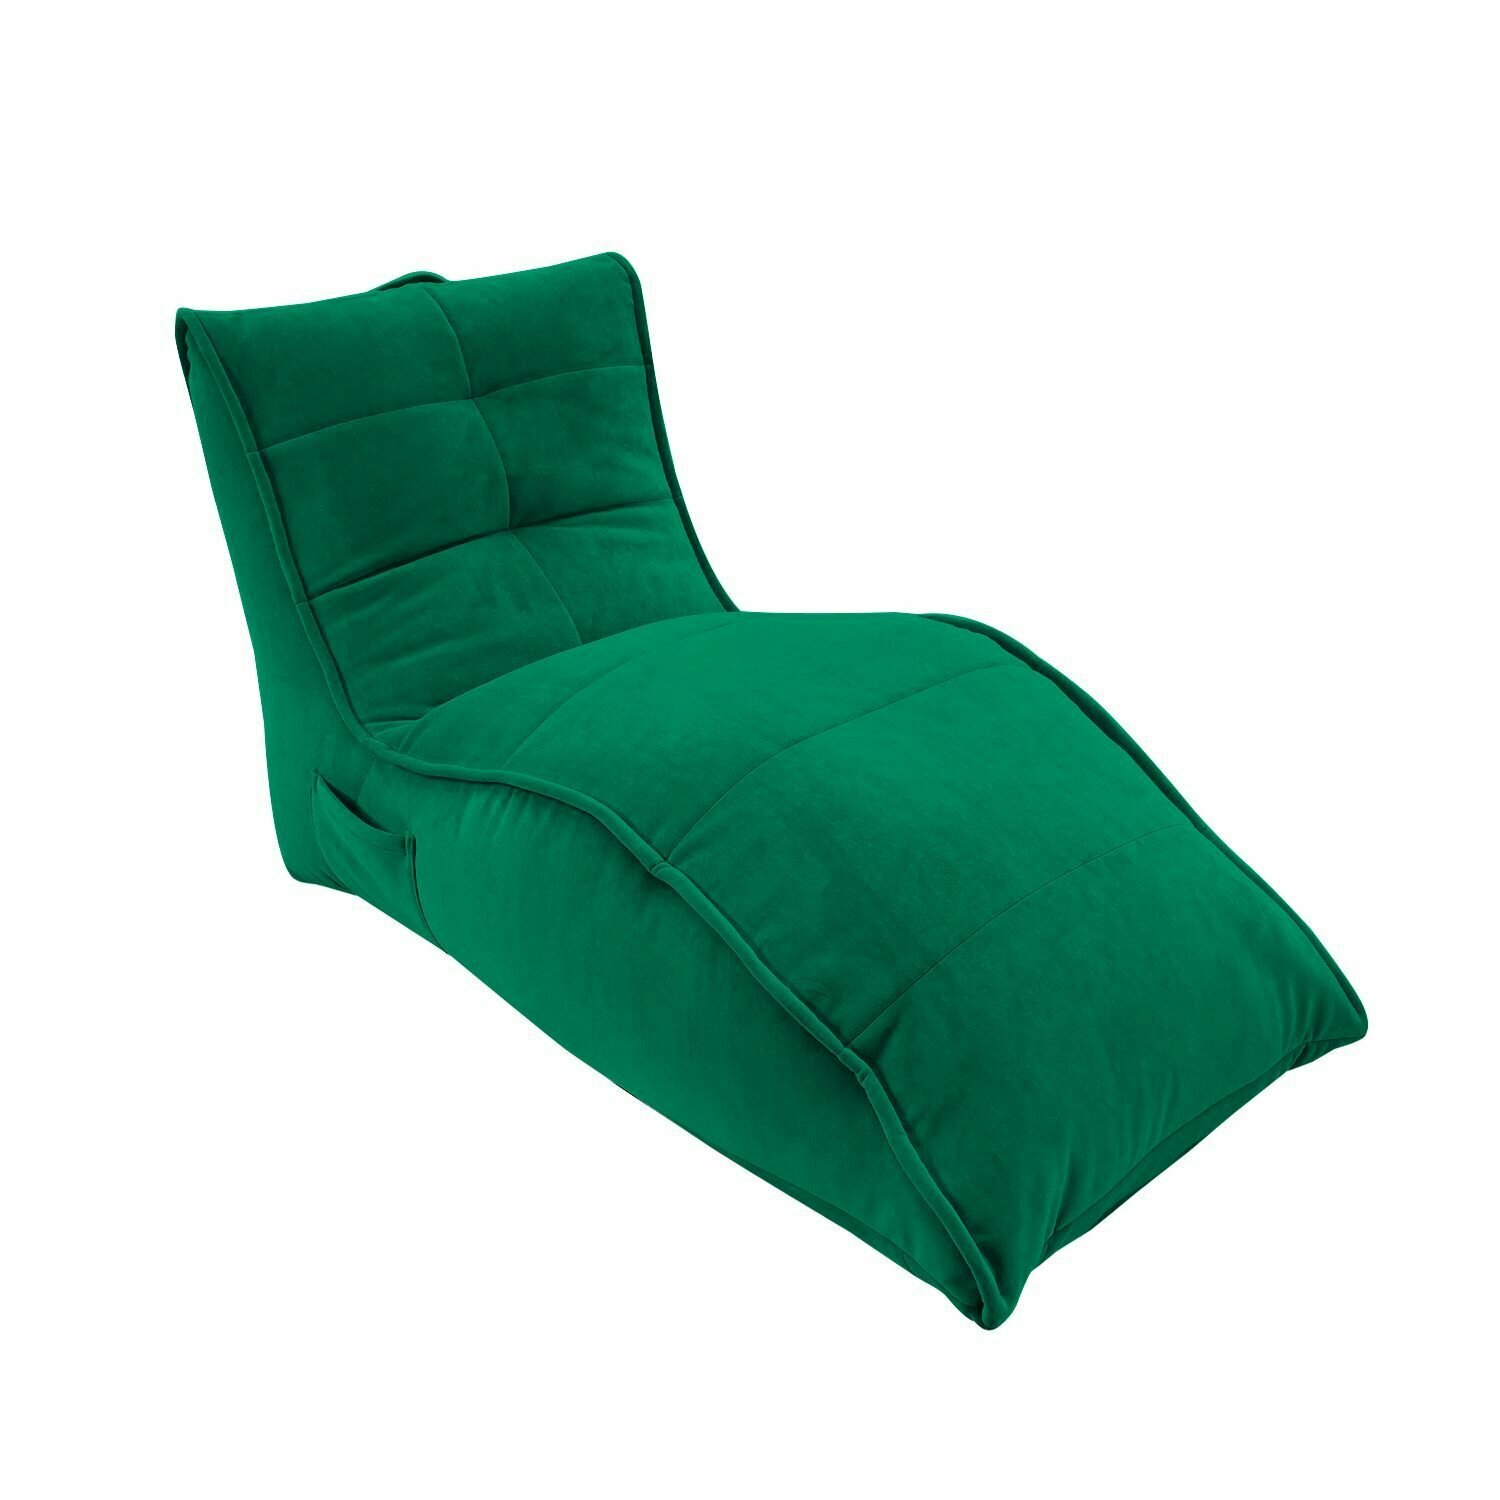 Бескаркасное кресло для отдыха aLounge - Avatar Sofa - Forest Green (велюр, изумрудный) - лаунж мебель в гостиную, спальню, детскую, на балкон